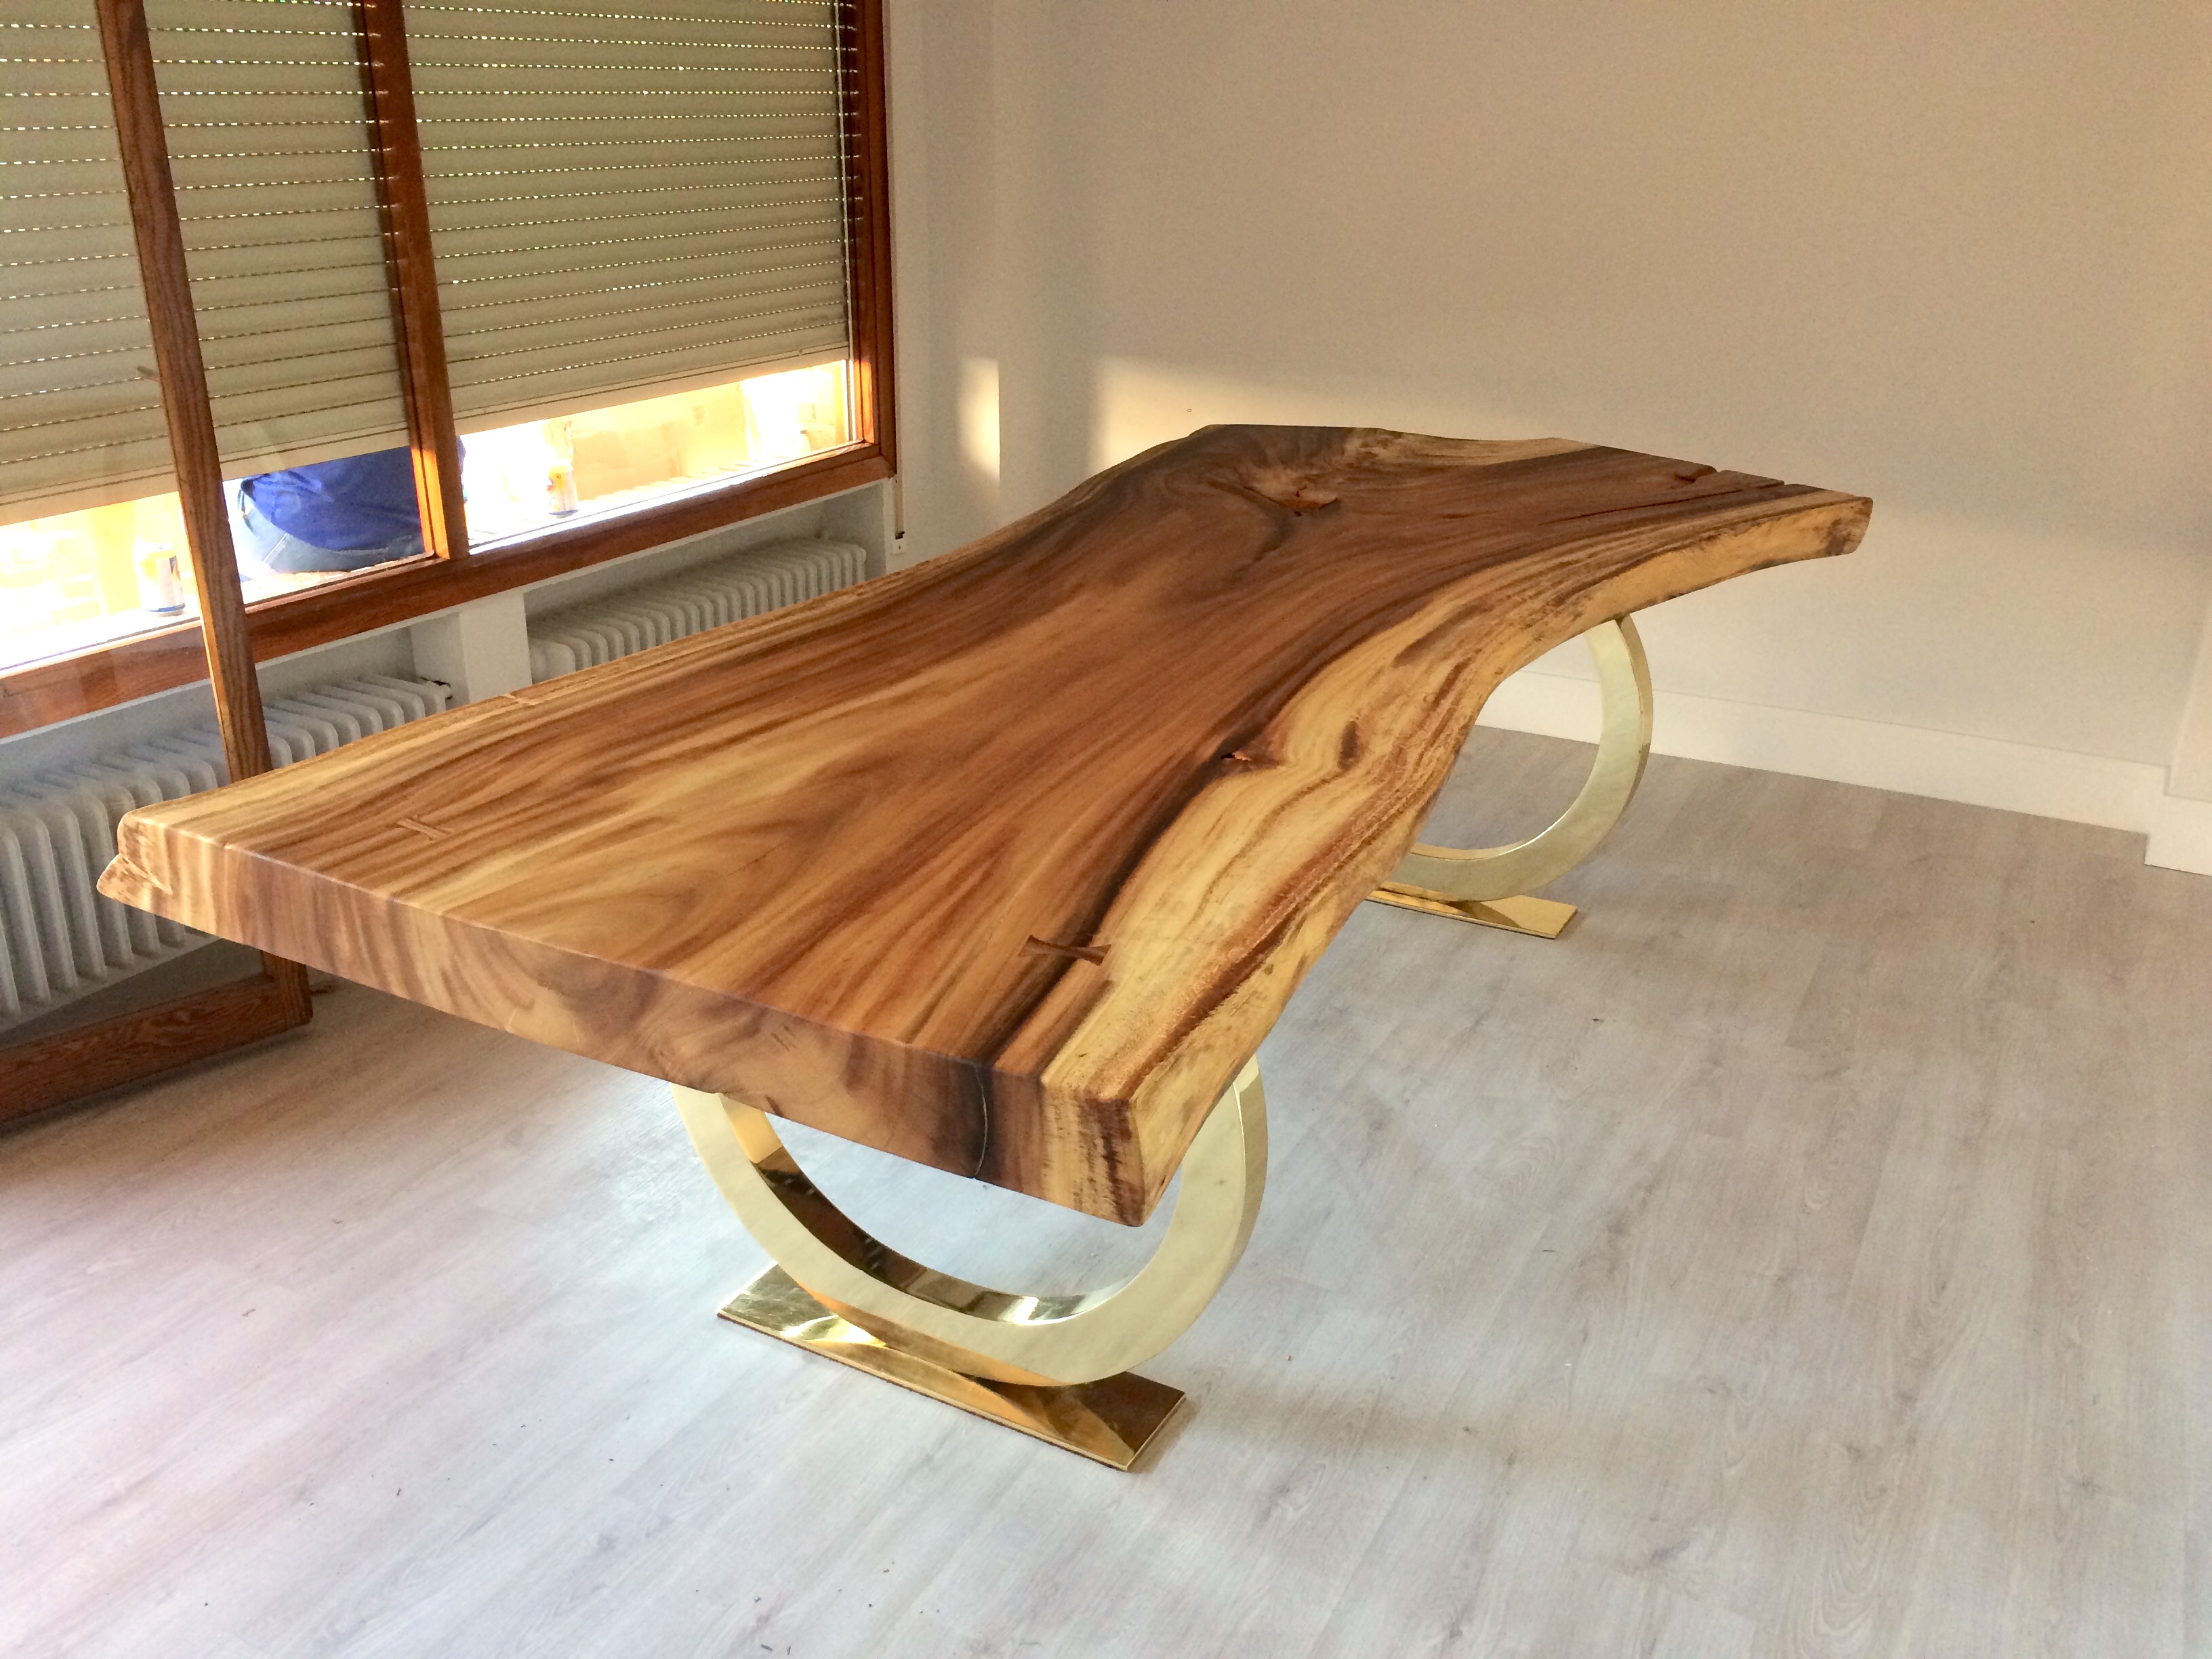 Mesa con tablero de madera y patas metálicas en color Negro Acabado  Barnizado Mate